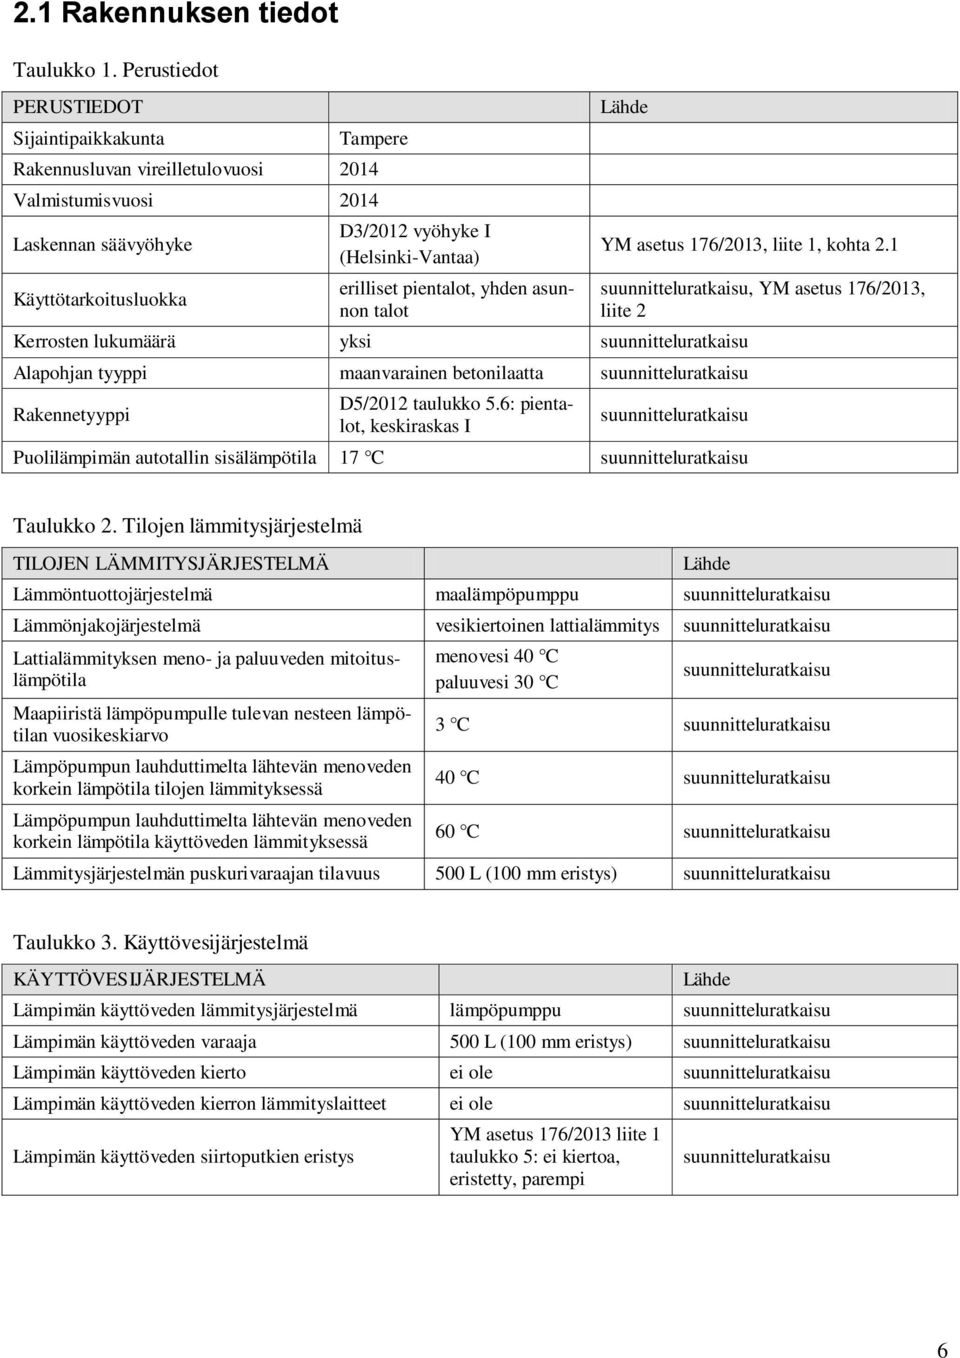 pientalot, yhden asunnon talot Lähde Kerrosten lukumäärä yksi suunnitteluratkaisu Alapohjan tyyppi maanvarainen betonilaatta suunnitteluratkaisu Rakennetyyppi D5/2012 taulukko 5.